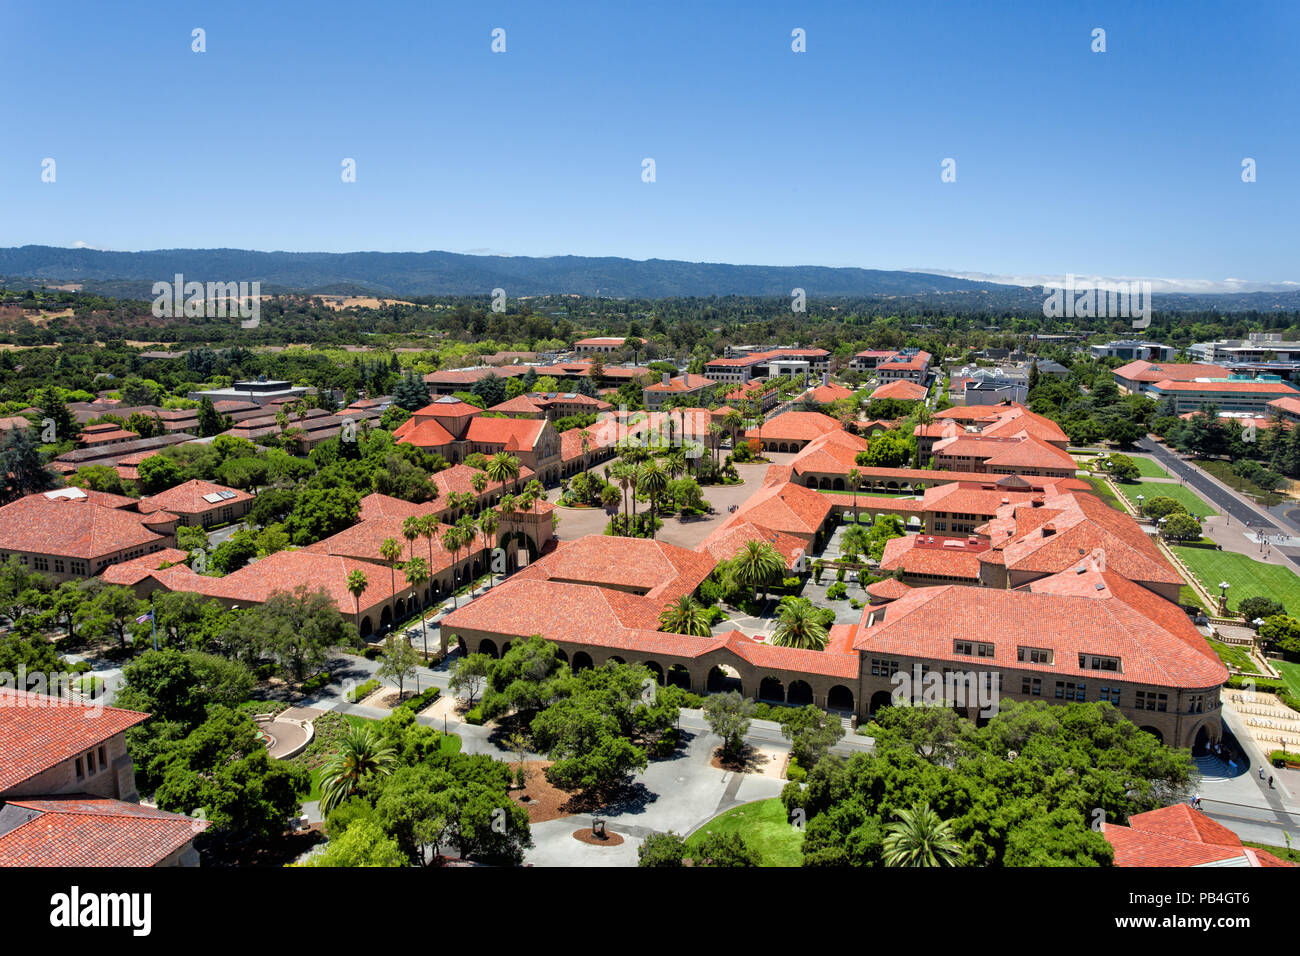 STANFORD, VEREINIGTE STAATEN - 6. Juli: Ansicht des Main Quadrant von Gebäuden an der historischen Standford University. Juli 6, 2013. Stockfoto